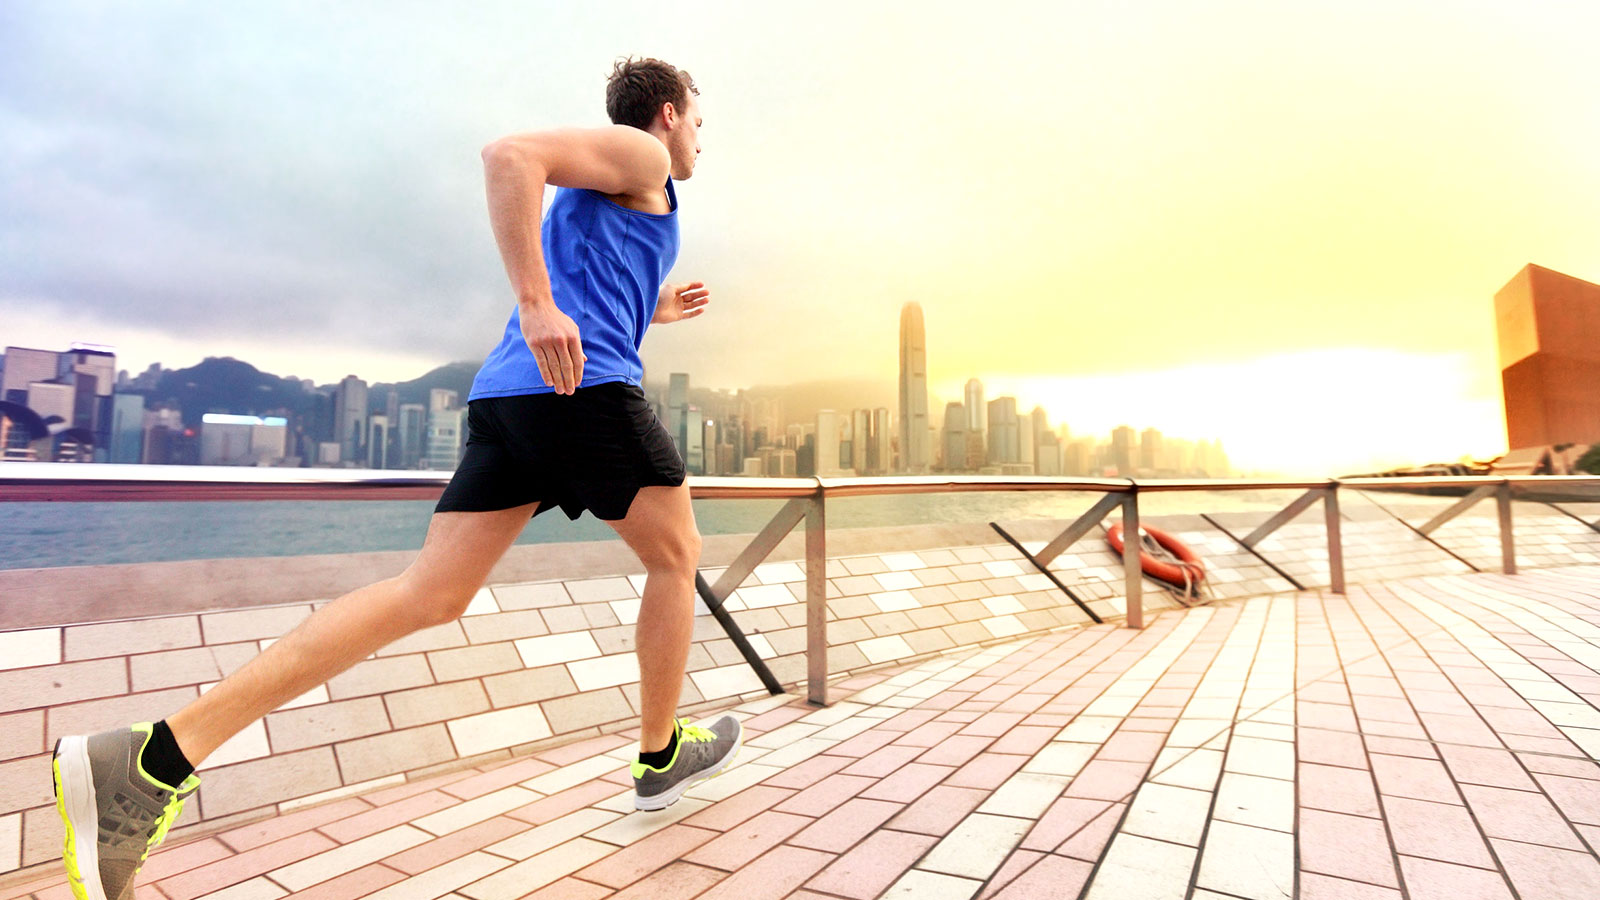 Trí nhớ cơ bắp giúp bạn luyện tập thể thao hiệu quả và giữ dáng